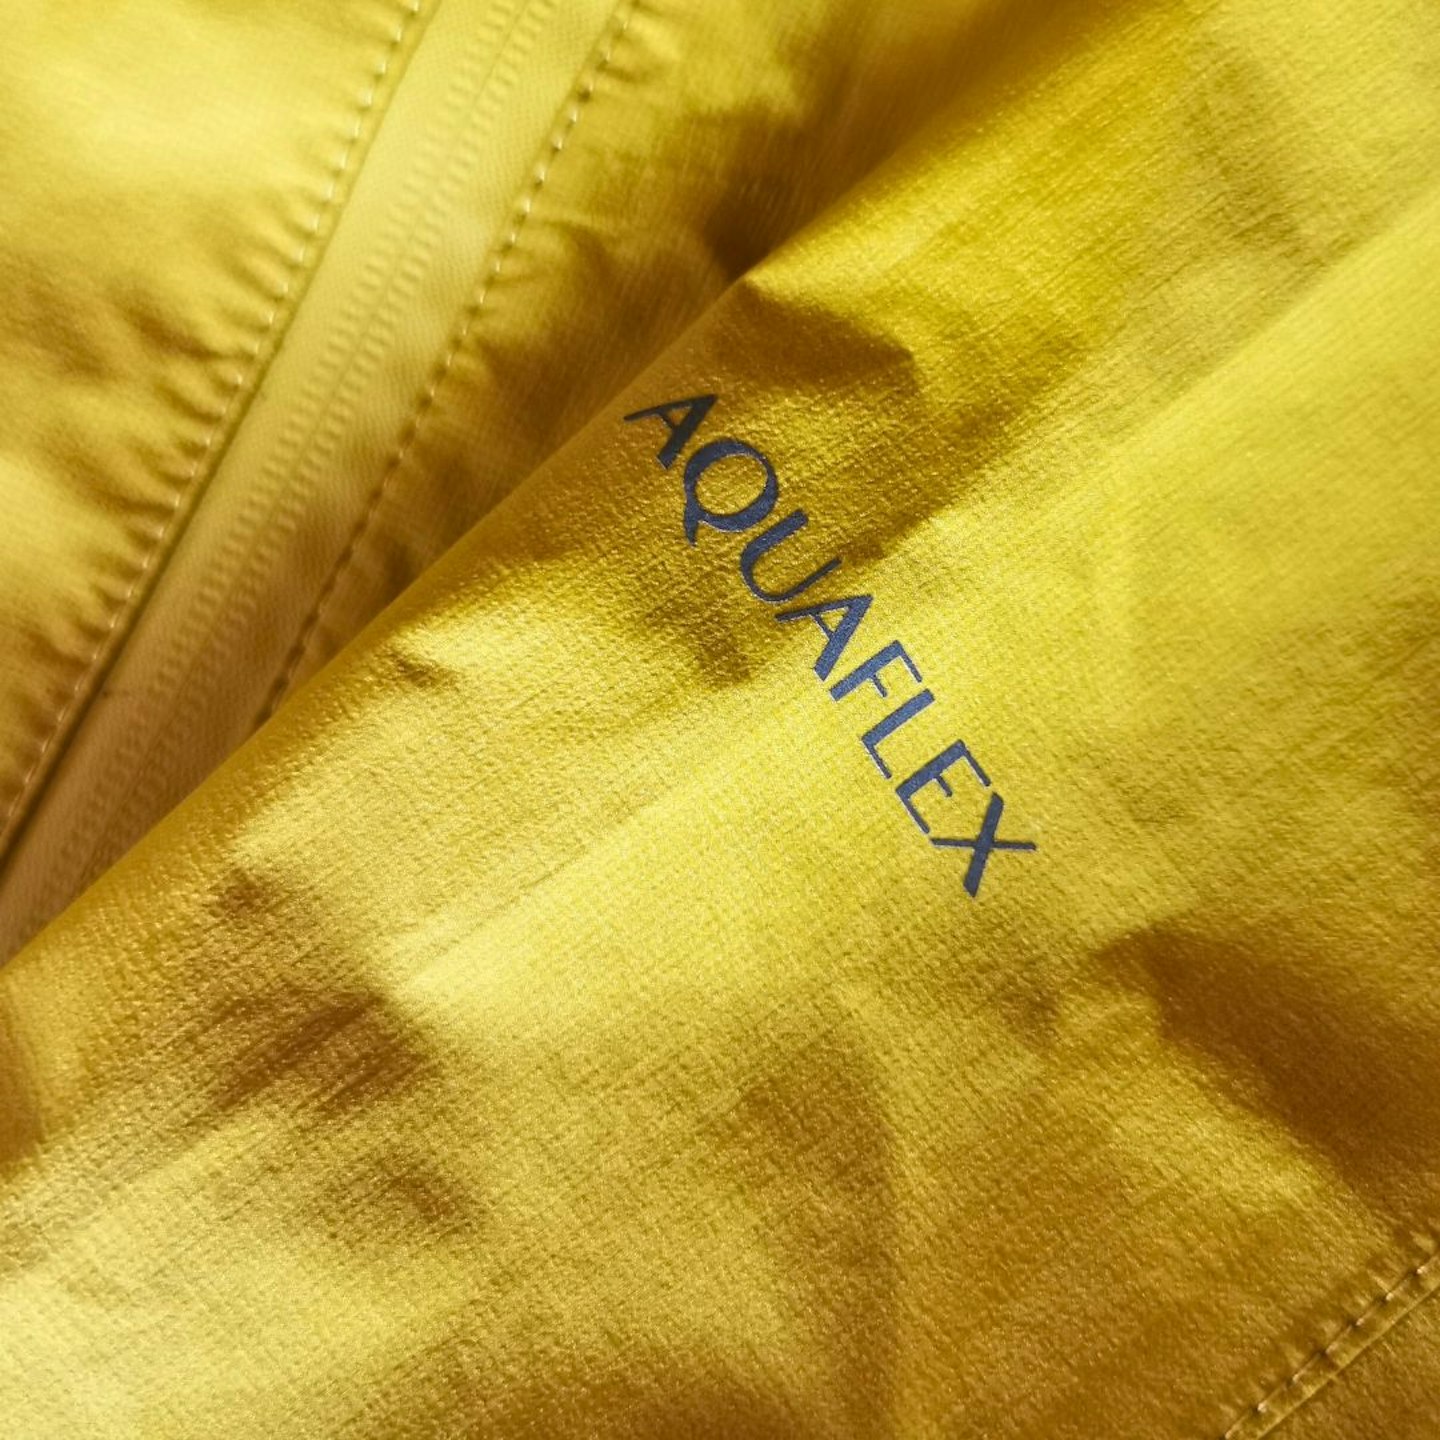 Keela Cairn Jacket waterproof fabric